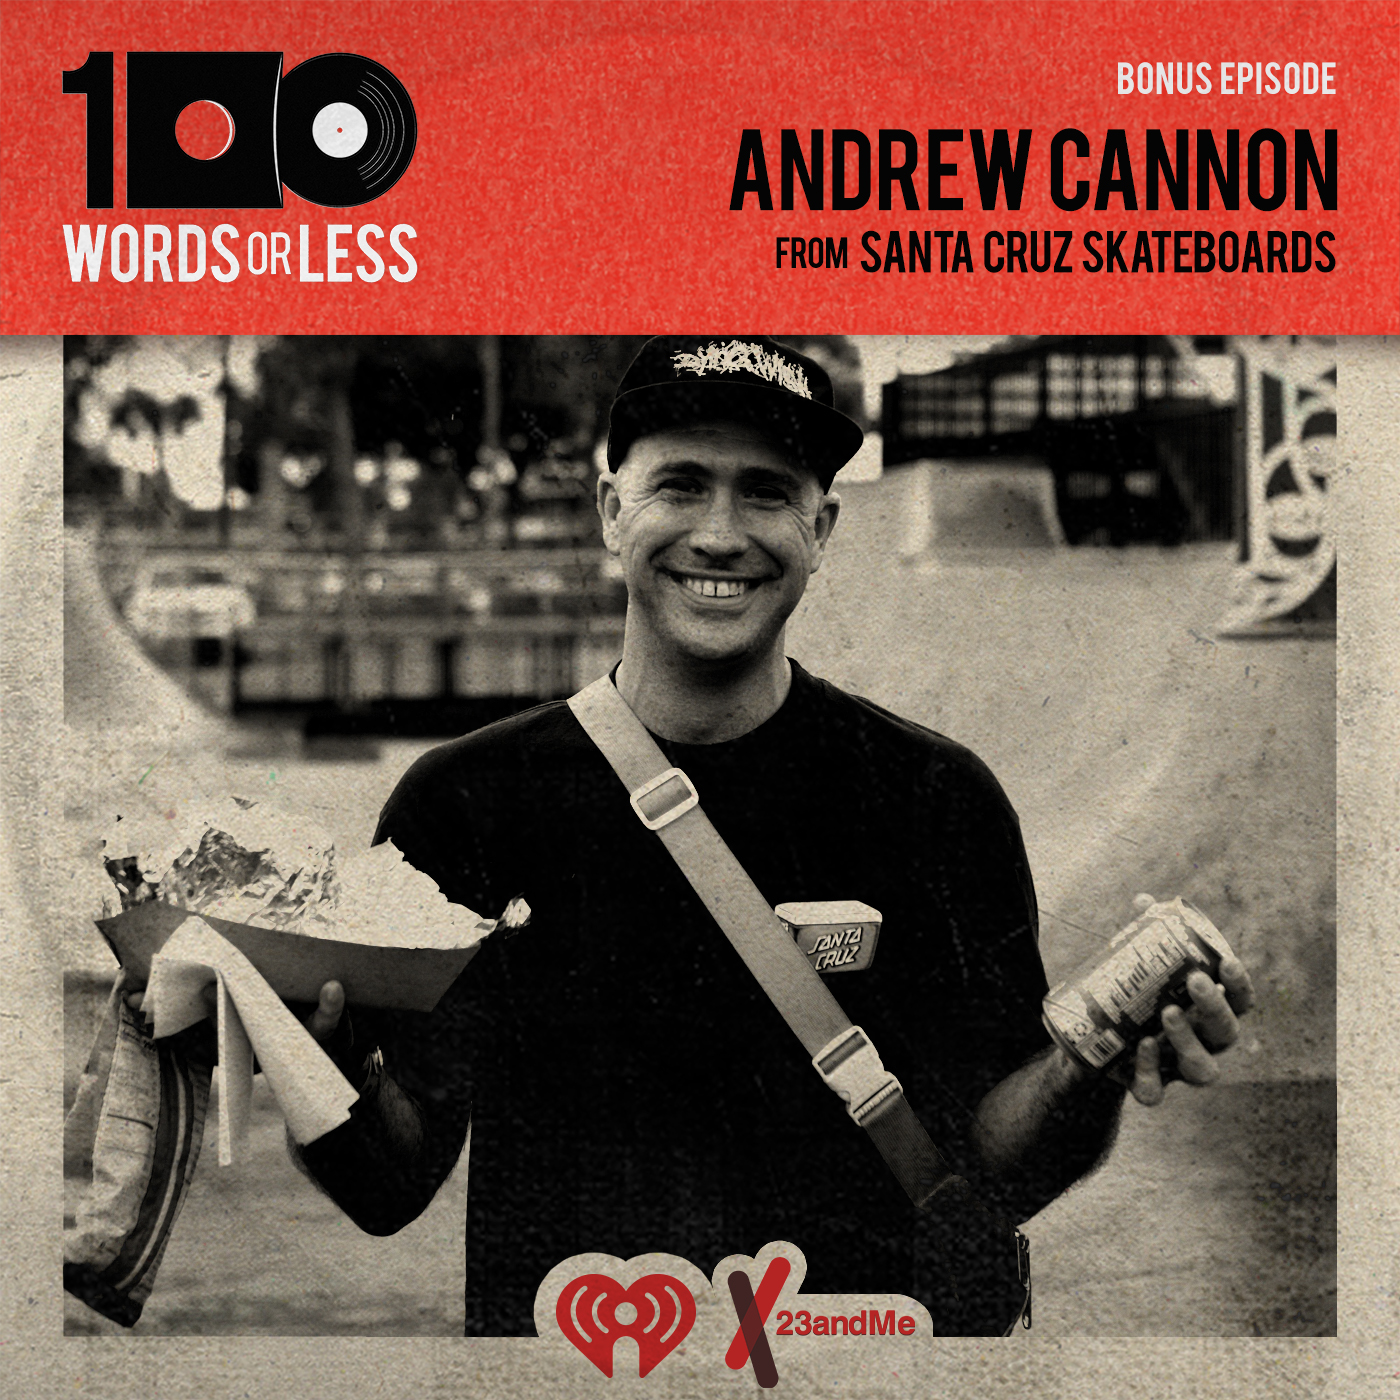 Andrew Cannon from Santa Cruz Skateboards